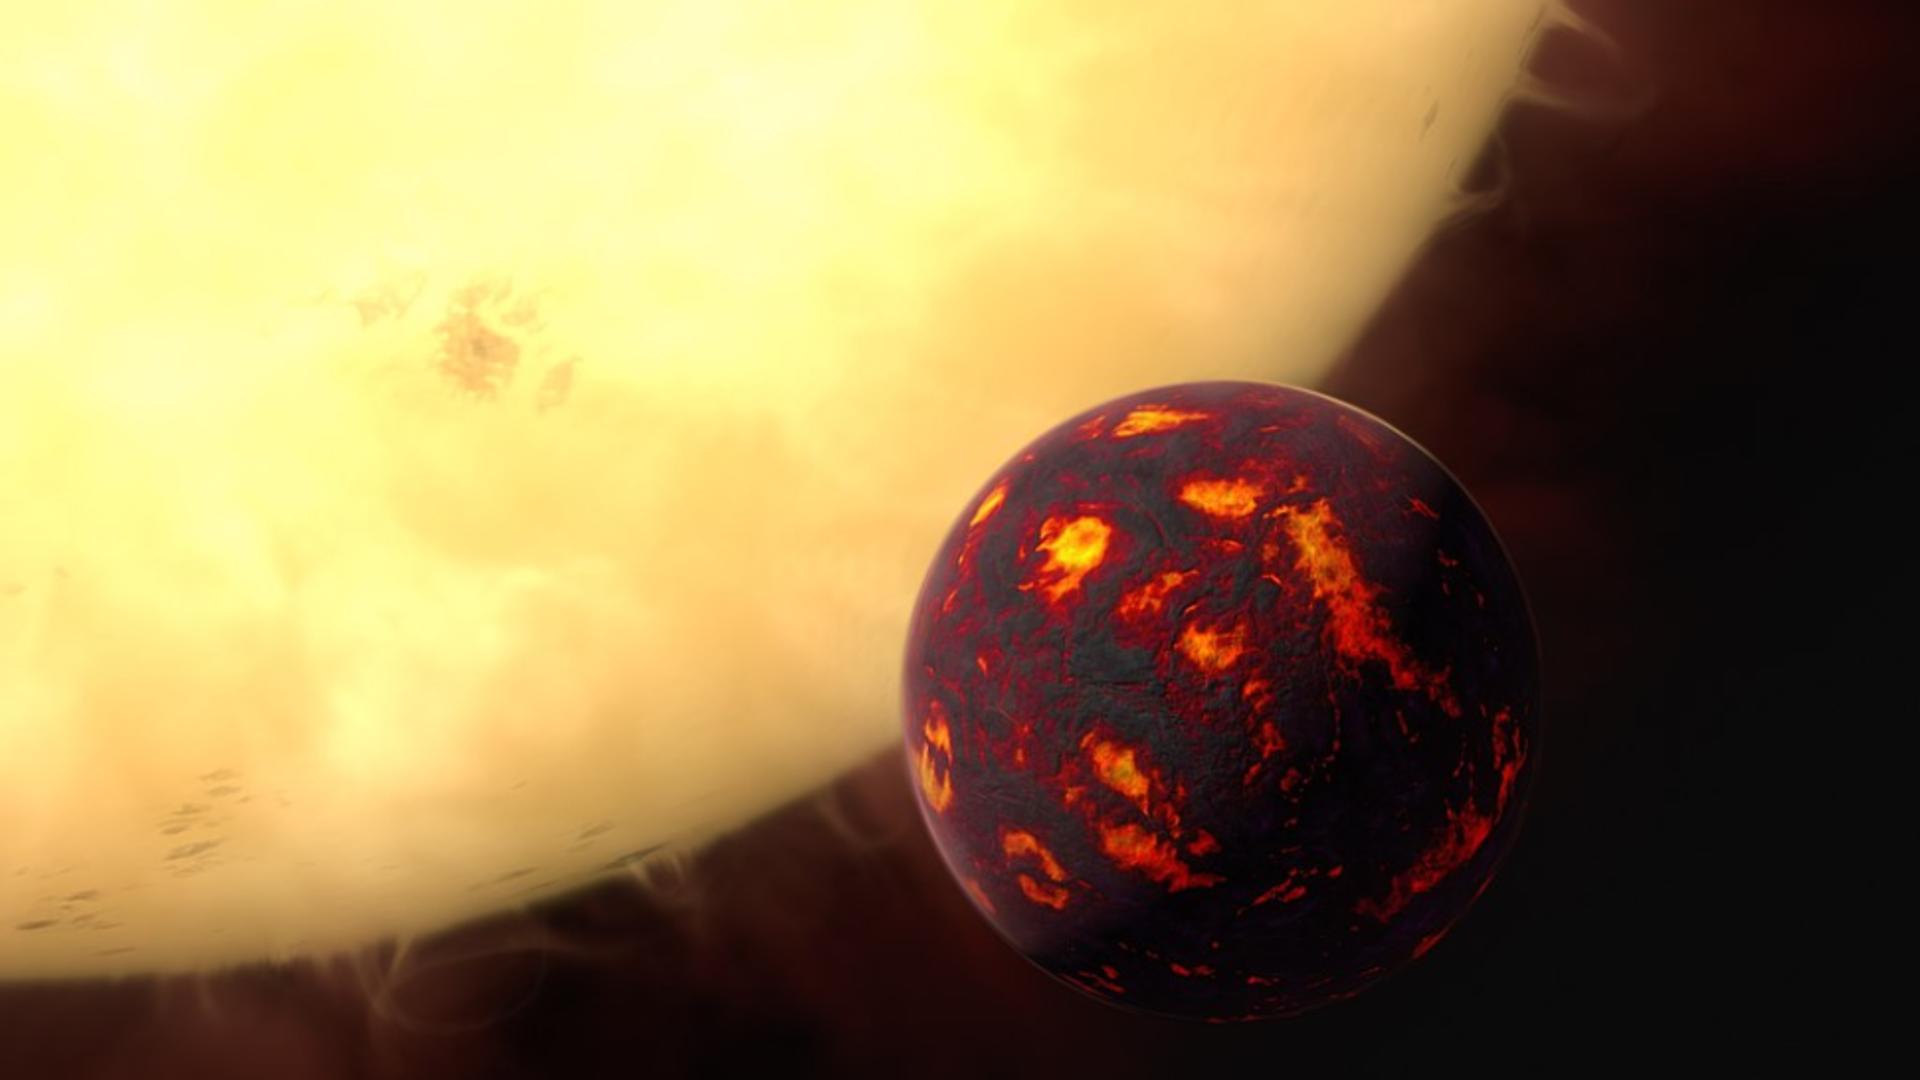 Planeta 55 Cancri e / Foto: Wikipedia